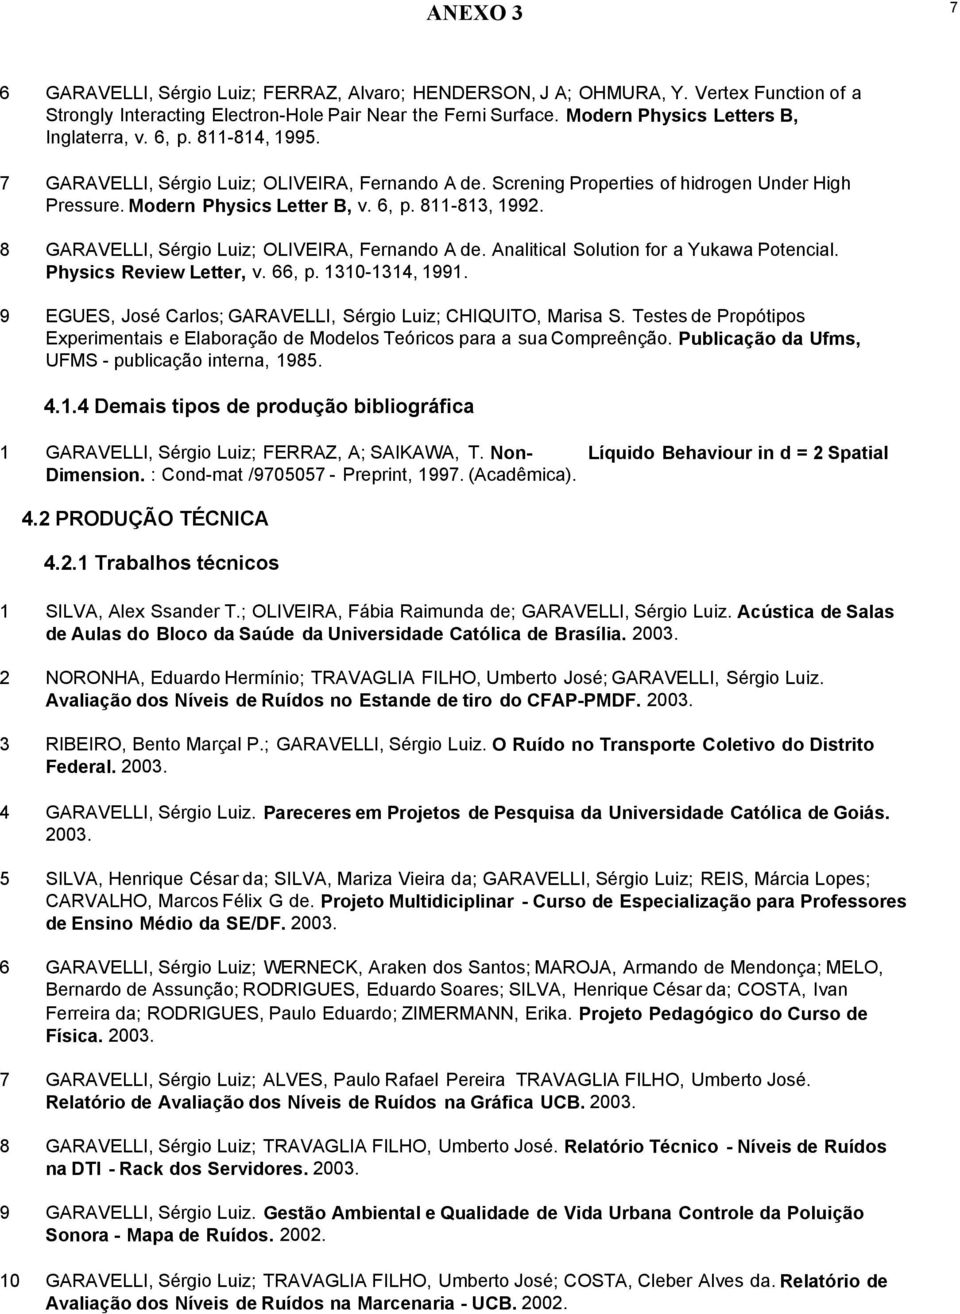 8 GARAVELLI, Sérgio Luiz; OLIVEIRA, Fernando A de. Analitical Solution for a Yukawa Potencial. Physics Review Letter, v. 66, p. 1310-1314, 1991.